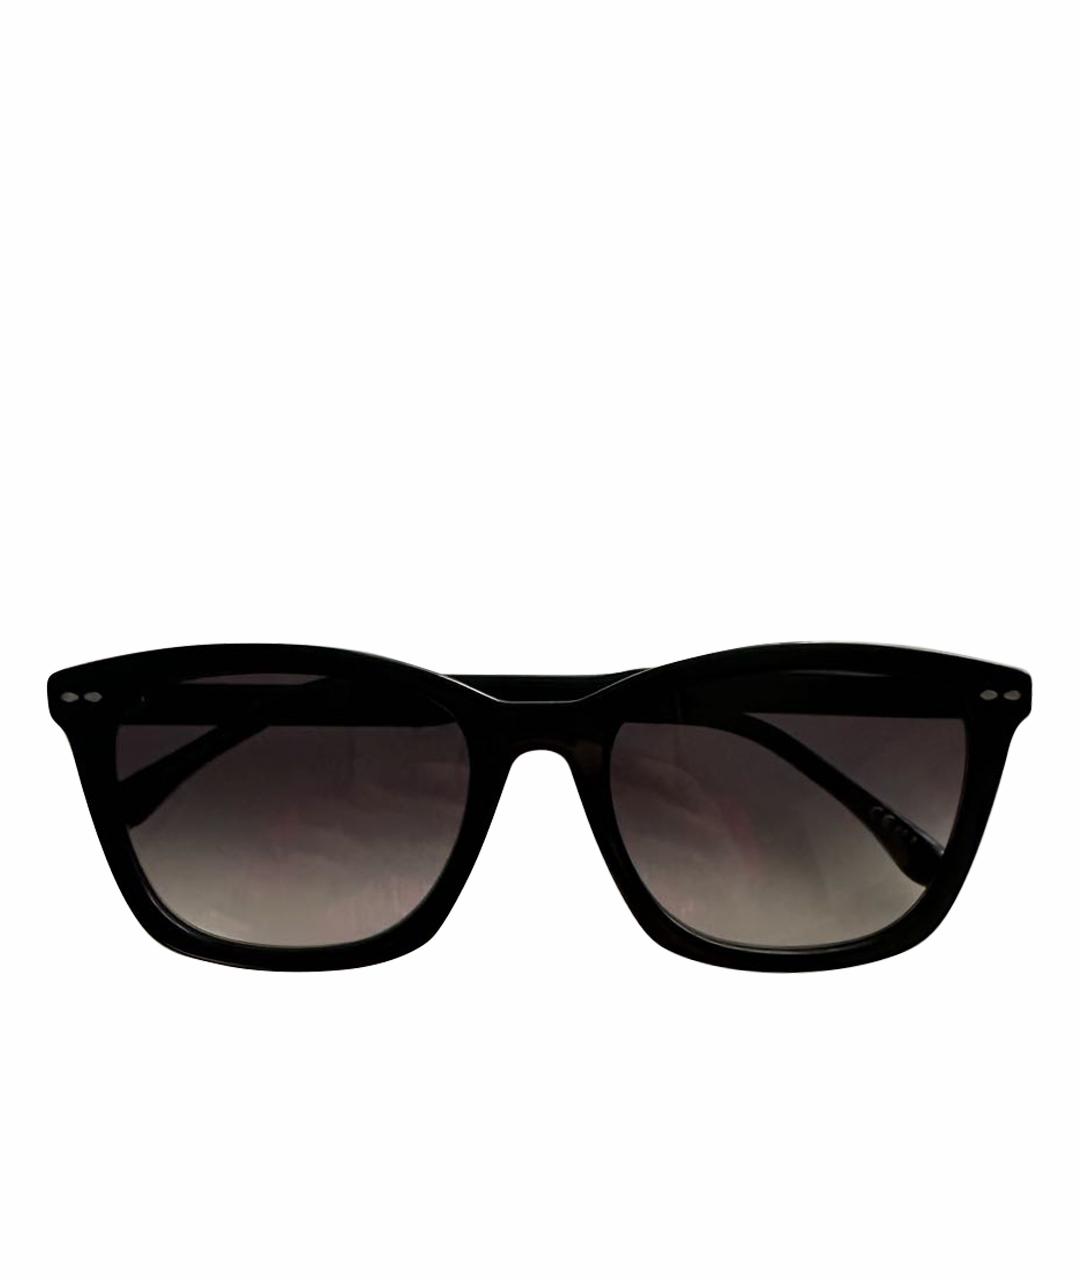 ISABEL MARANT Черные пластиковые солнцезащитные очки, фото 1